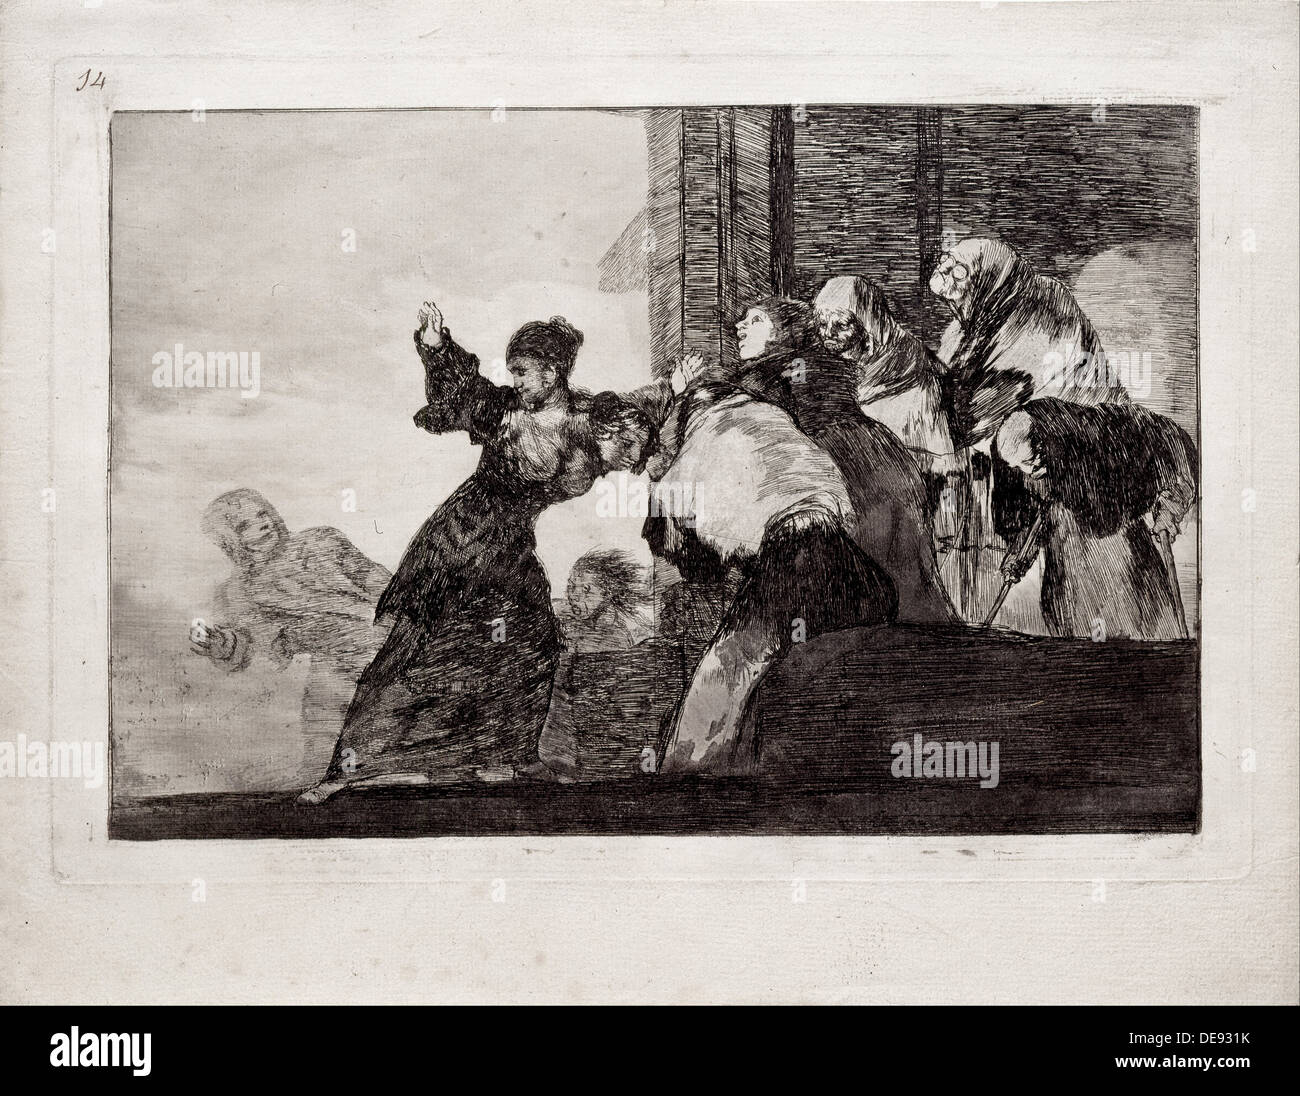 Folie pauvres (de la série Los disparates (Follies), 1815-1819. Artiste : Goya, Francisco de (1746-1828) Banque D'Images